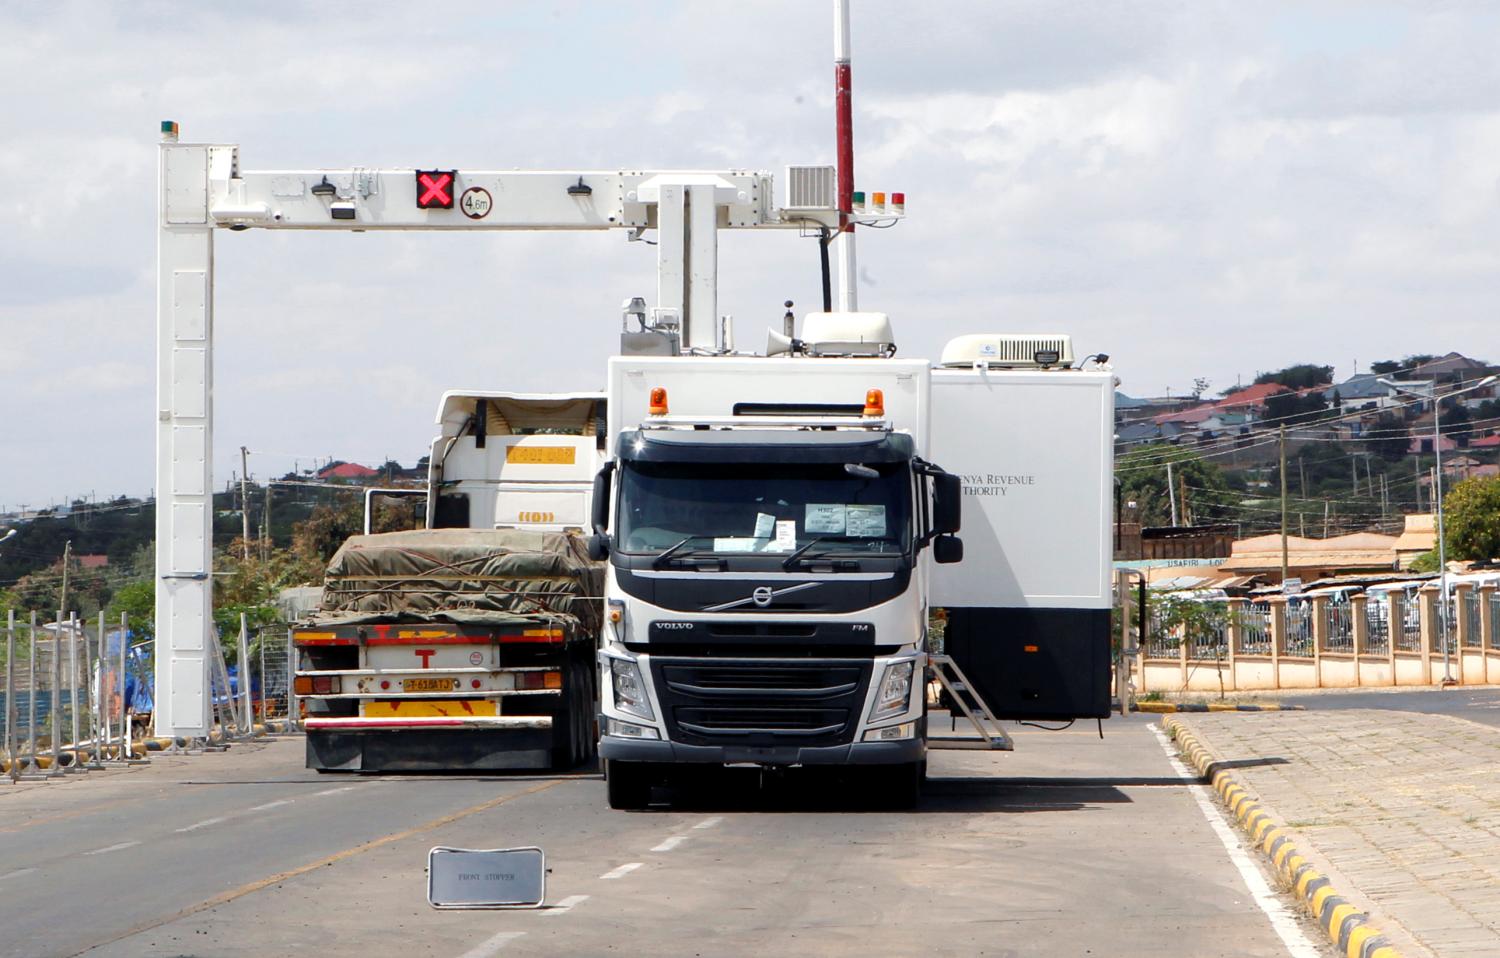 Transit trucks go through an electronic weighbridge at the border crossing point between Kenya and Tanzania in Namanga, Tanzania July 19, 2019. Picture taken July 19, 2019. REUTERS/Njeri Mwangi